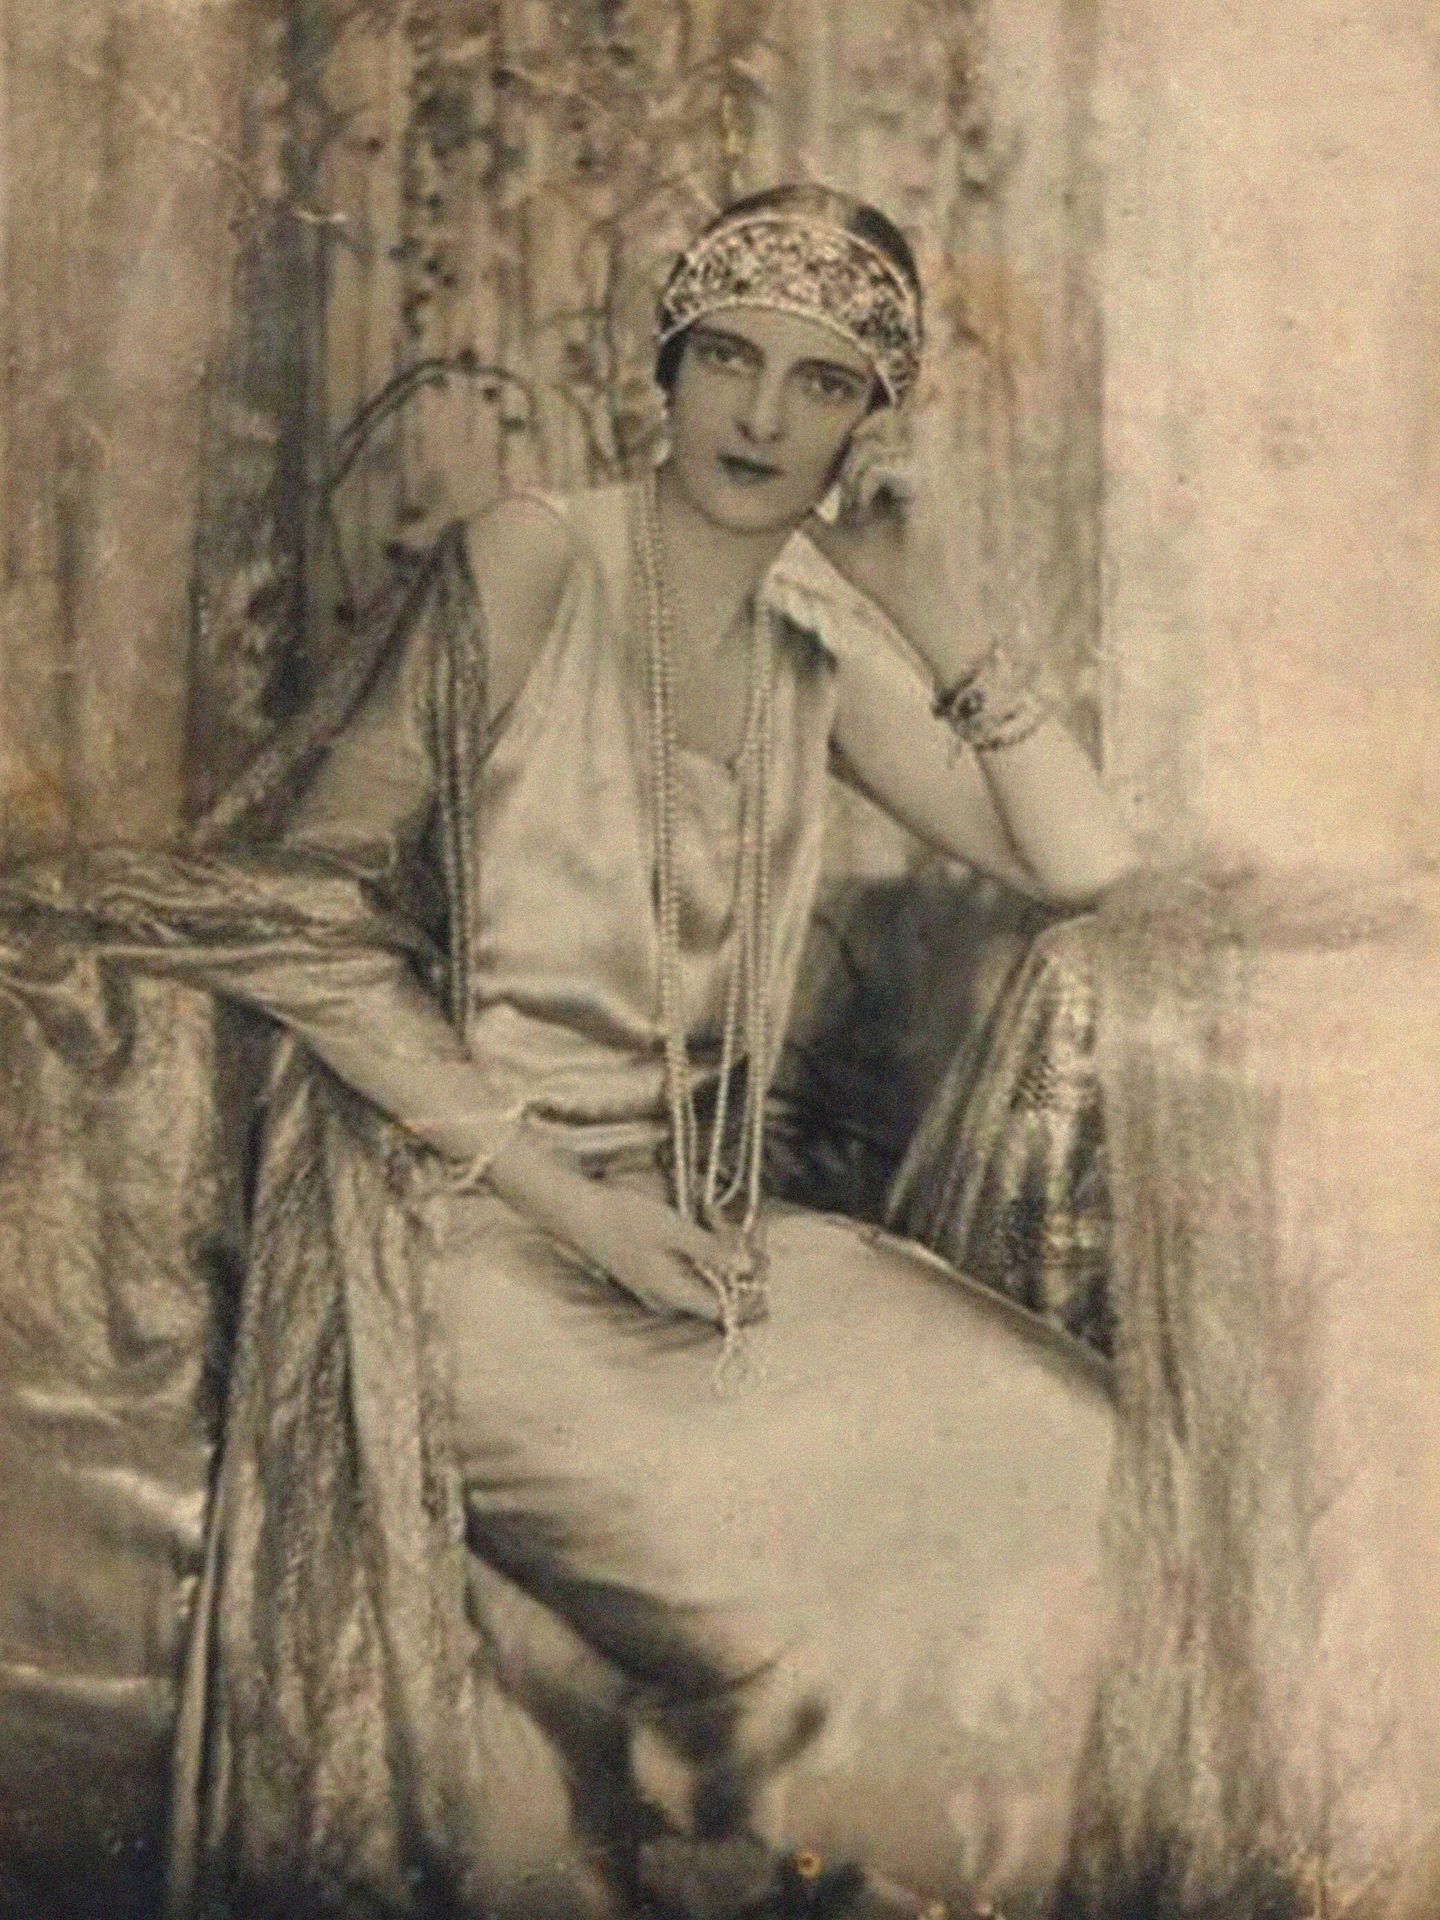 Retrato de la Princesa Irina Alexandrovna de Rusia (1895-1970), llevando una pieza de la Maison Irfé. (Getty)